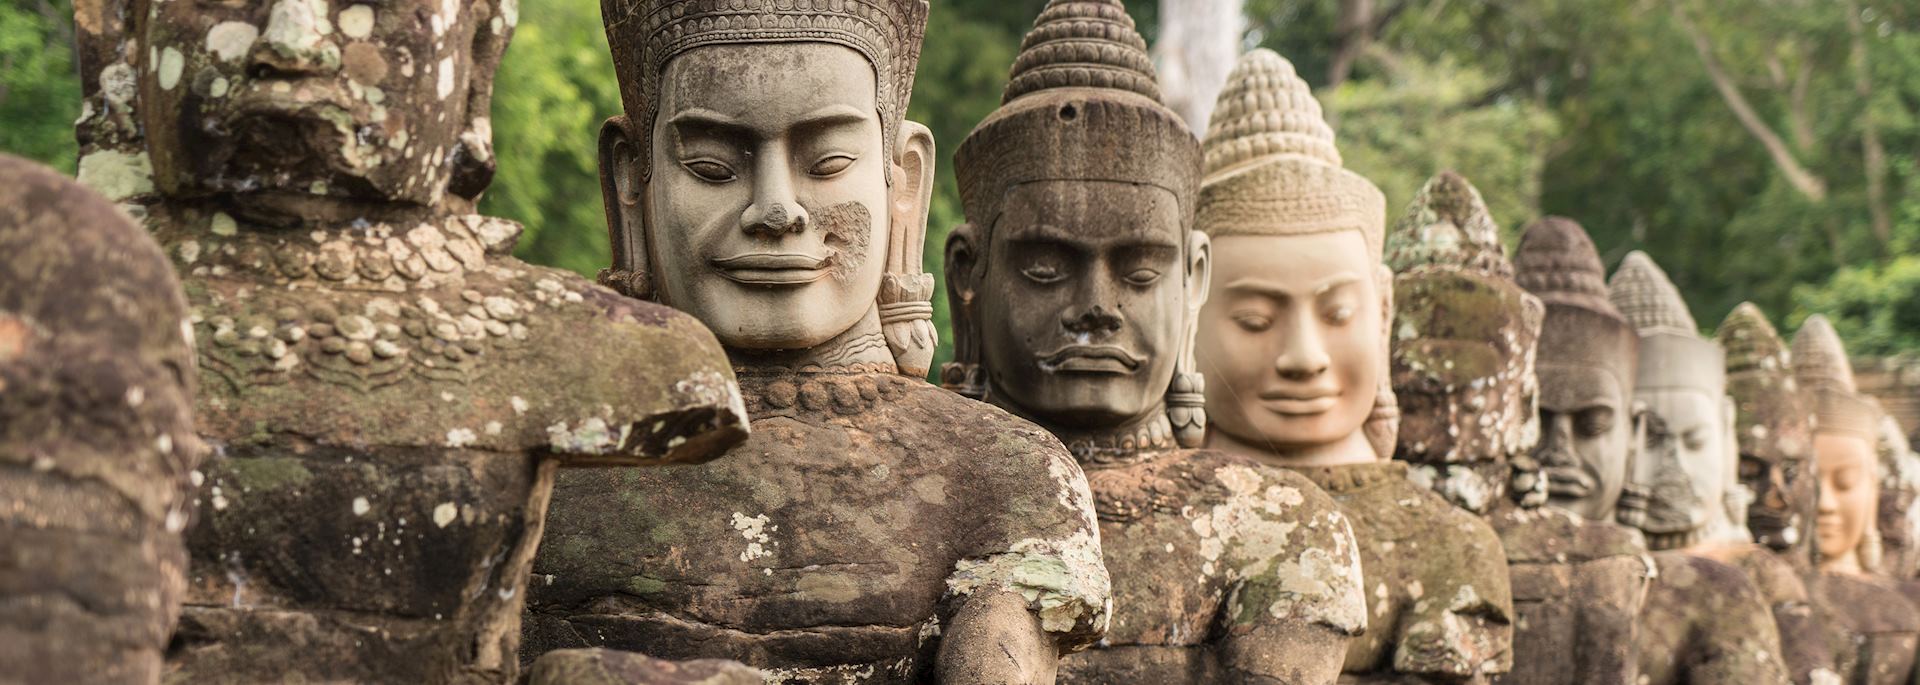 Stone carvings at Angkor Thom